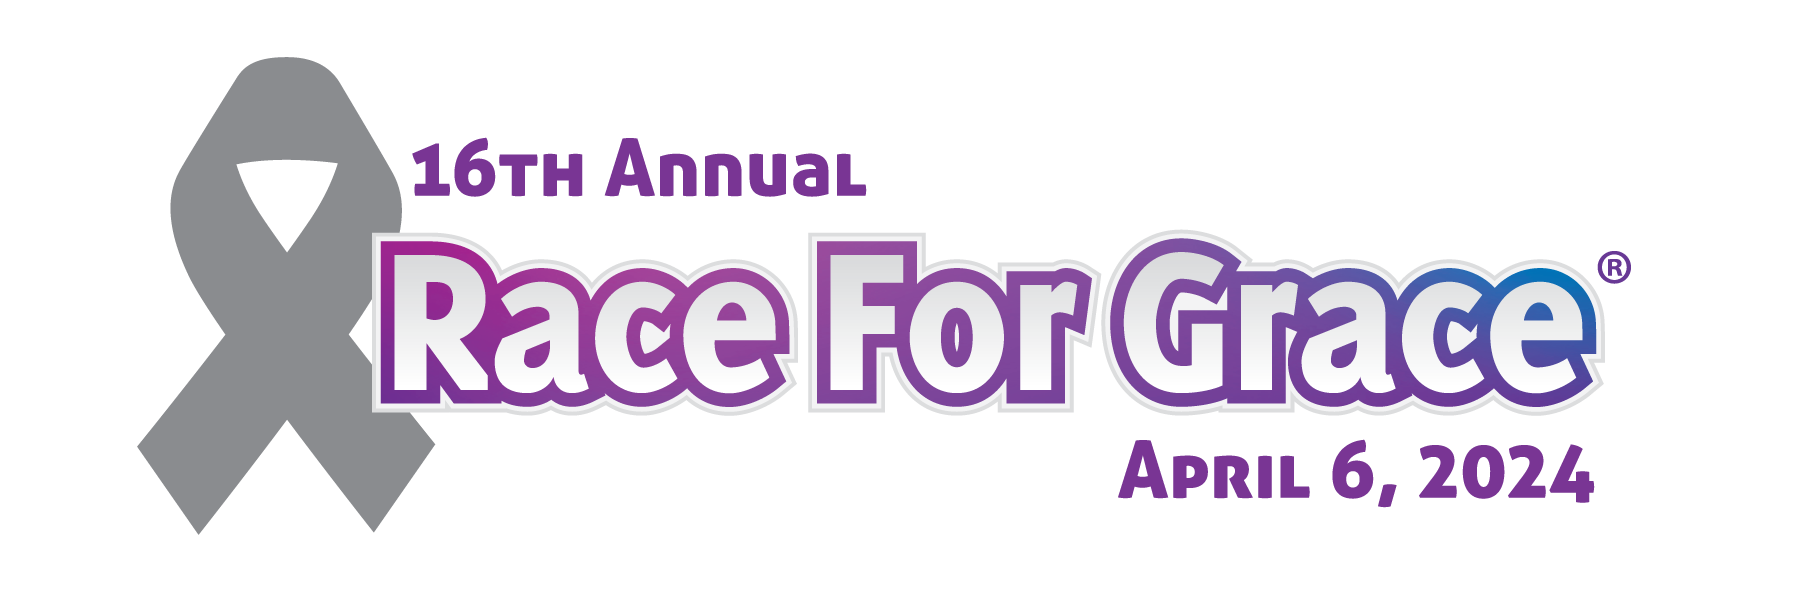 Race For Grace logo